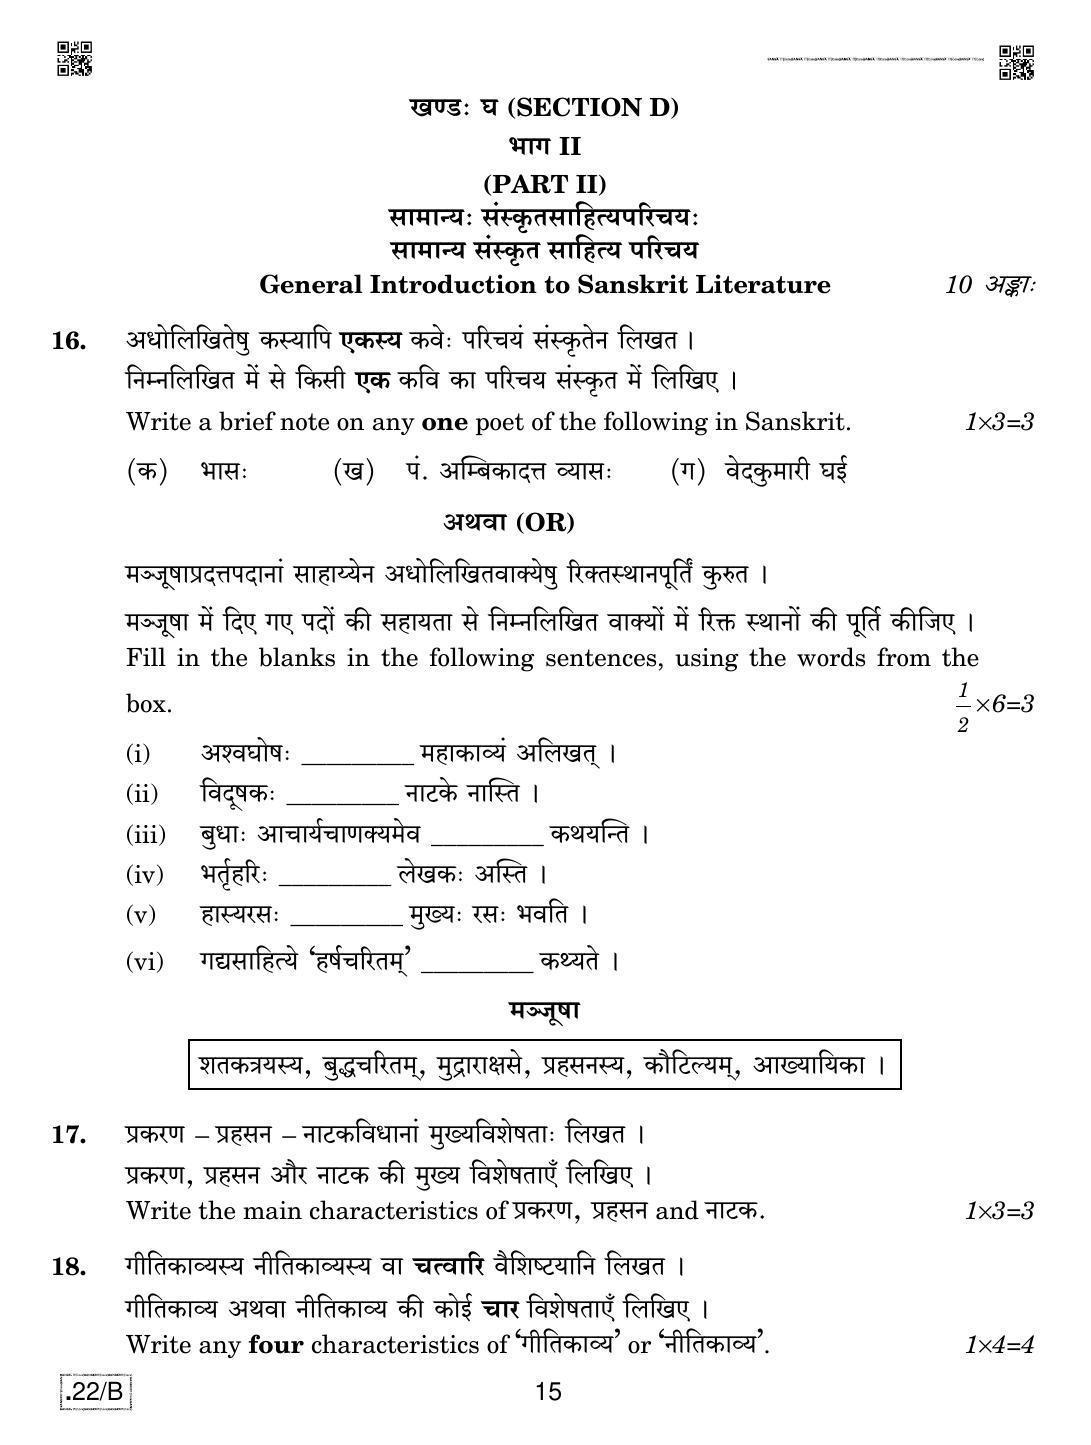 CBSE Class 12 Sanskrit Core 2020 Compartment Question Paper - Page 15